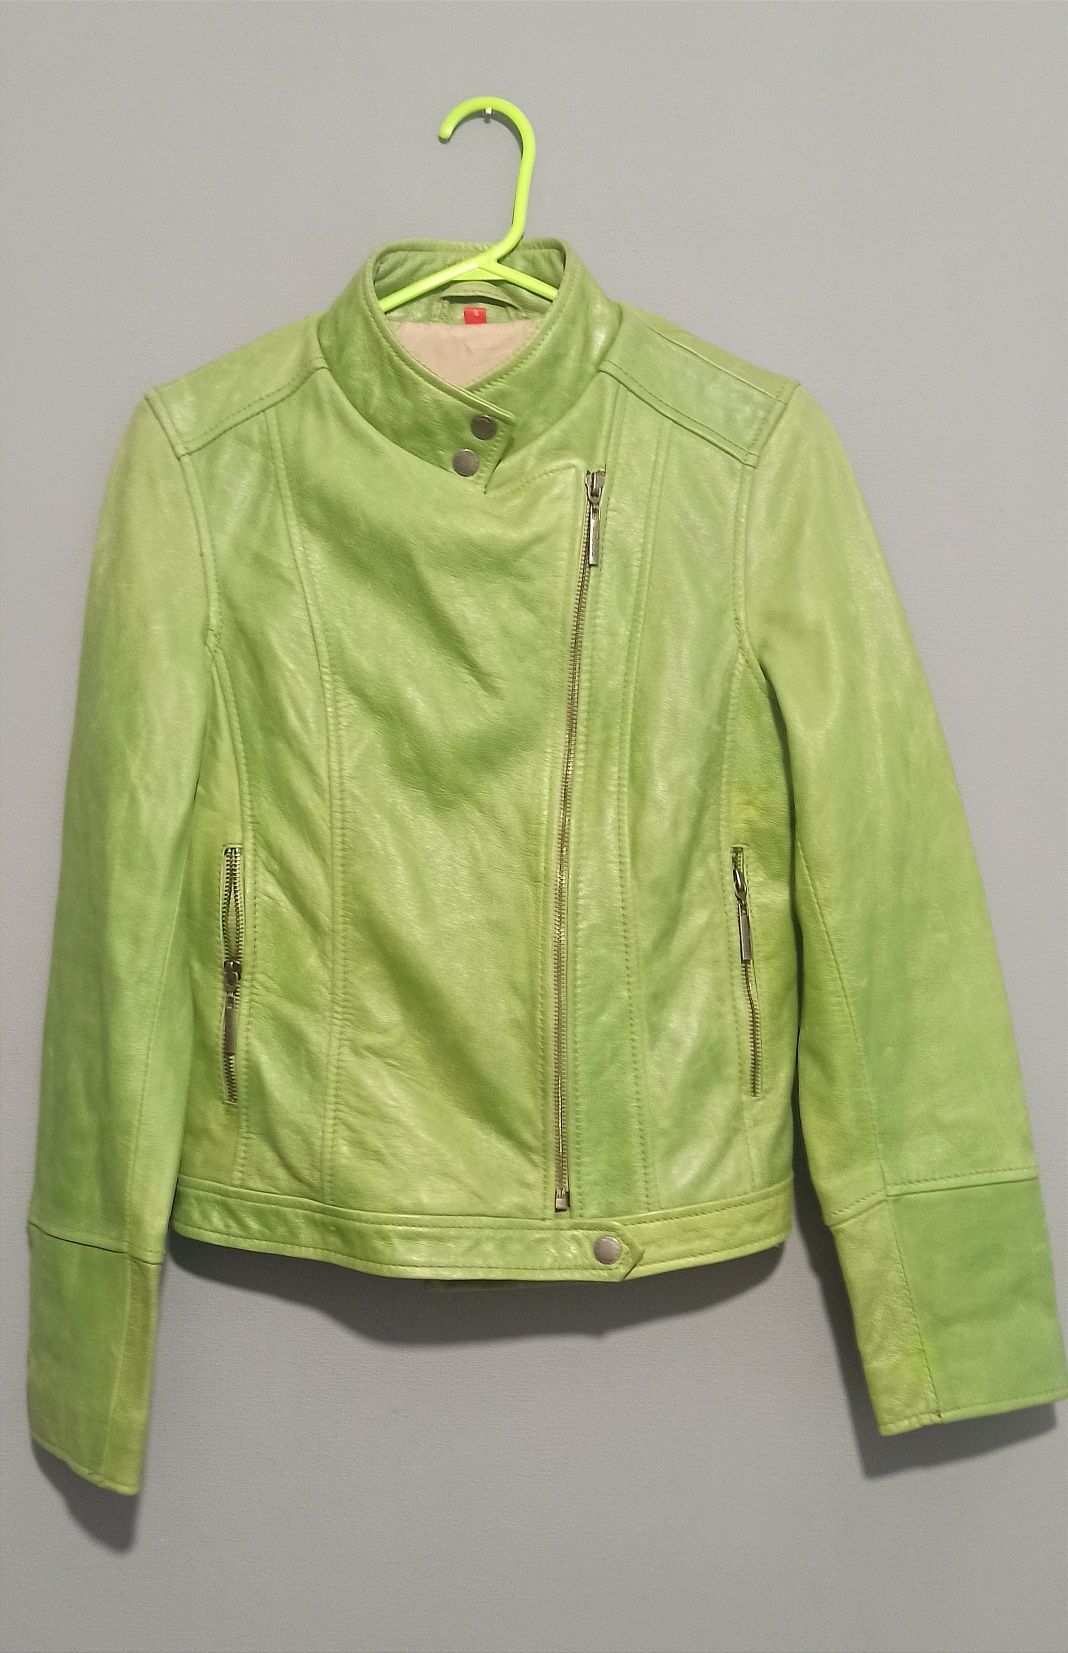 Яскрава шкіряна куртка

колір весняної соковитої зелені

вона неймовір